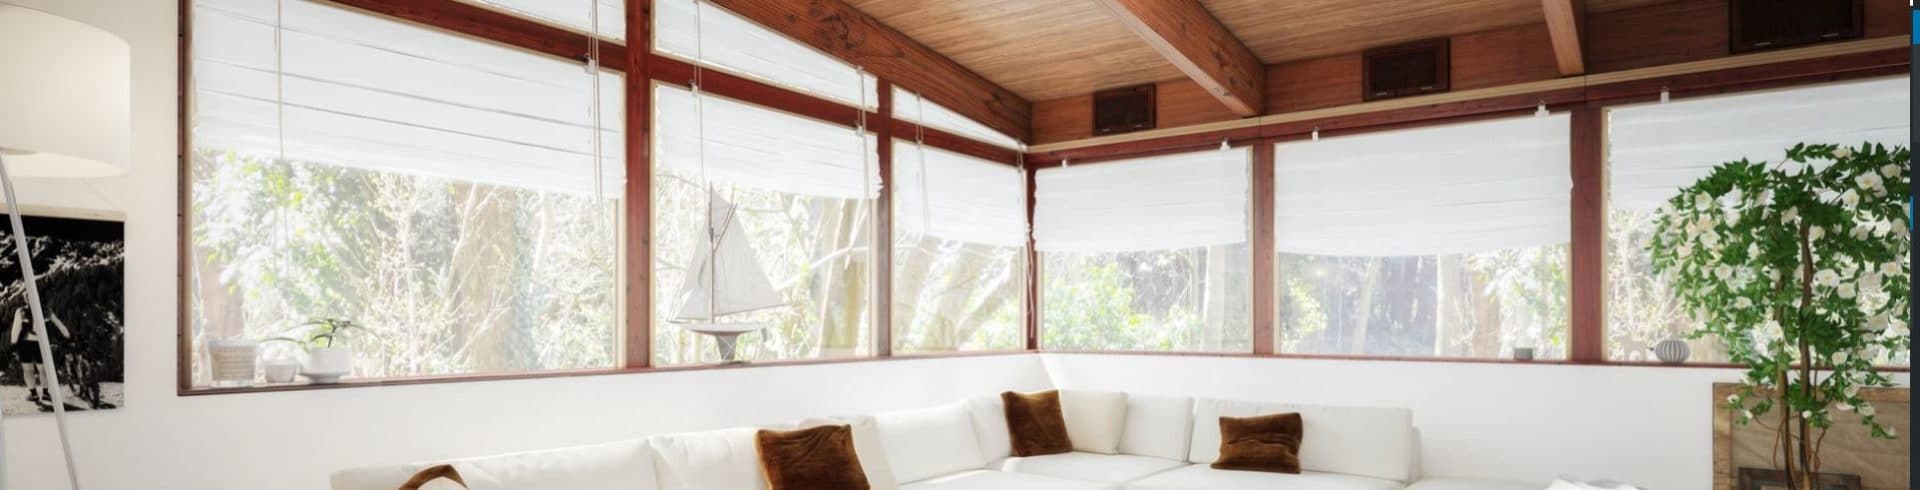 Véranda en bois, une extension esthétique et écologique de votre maison